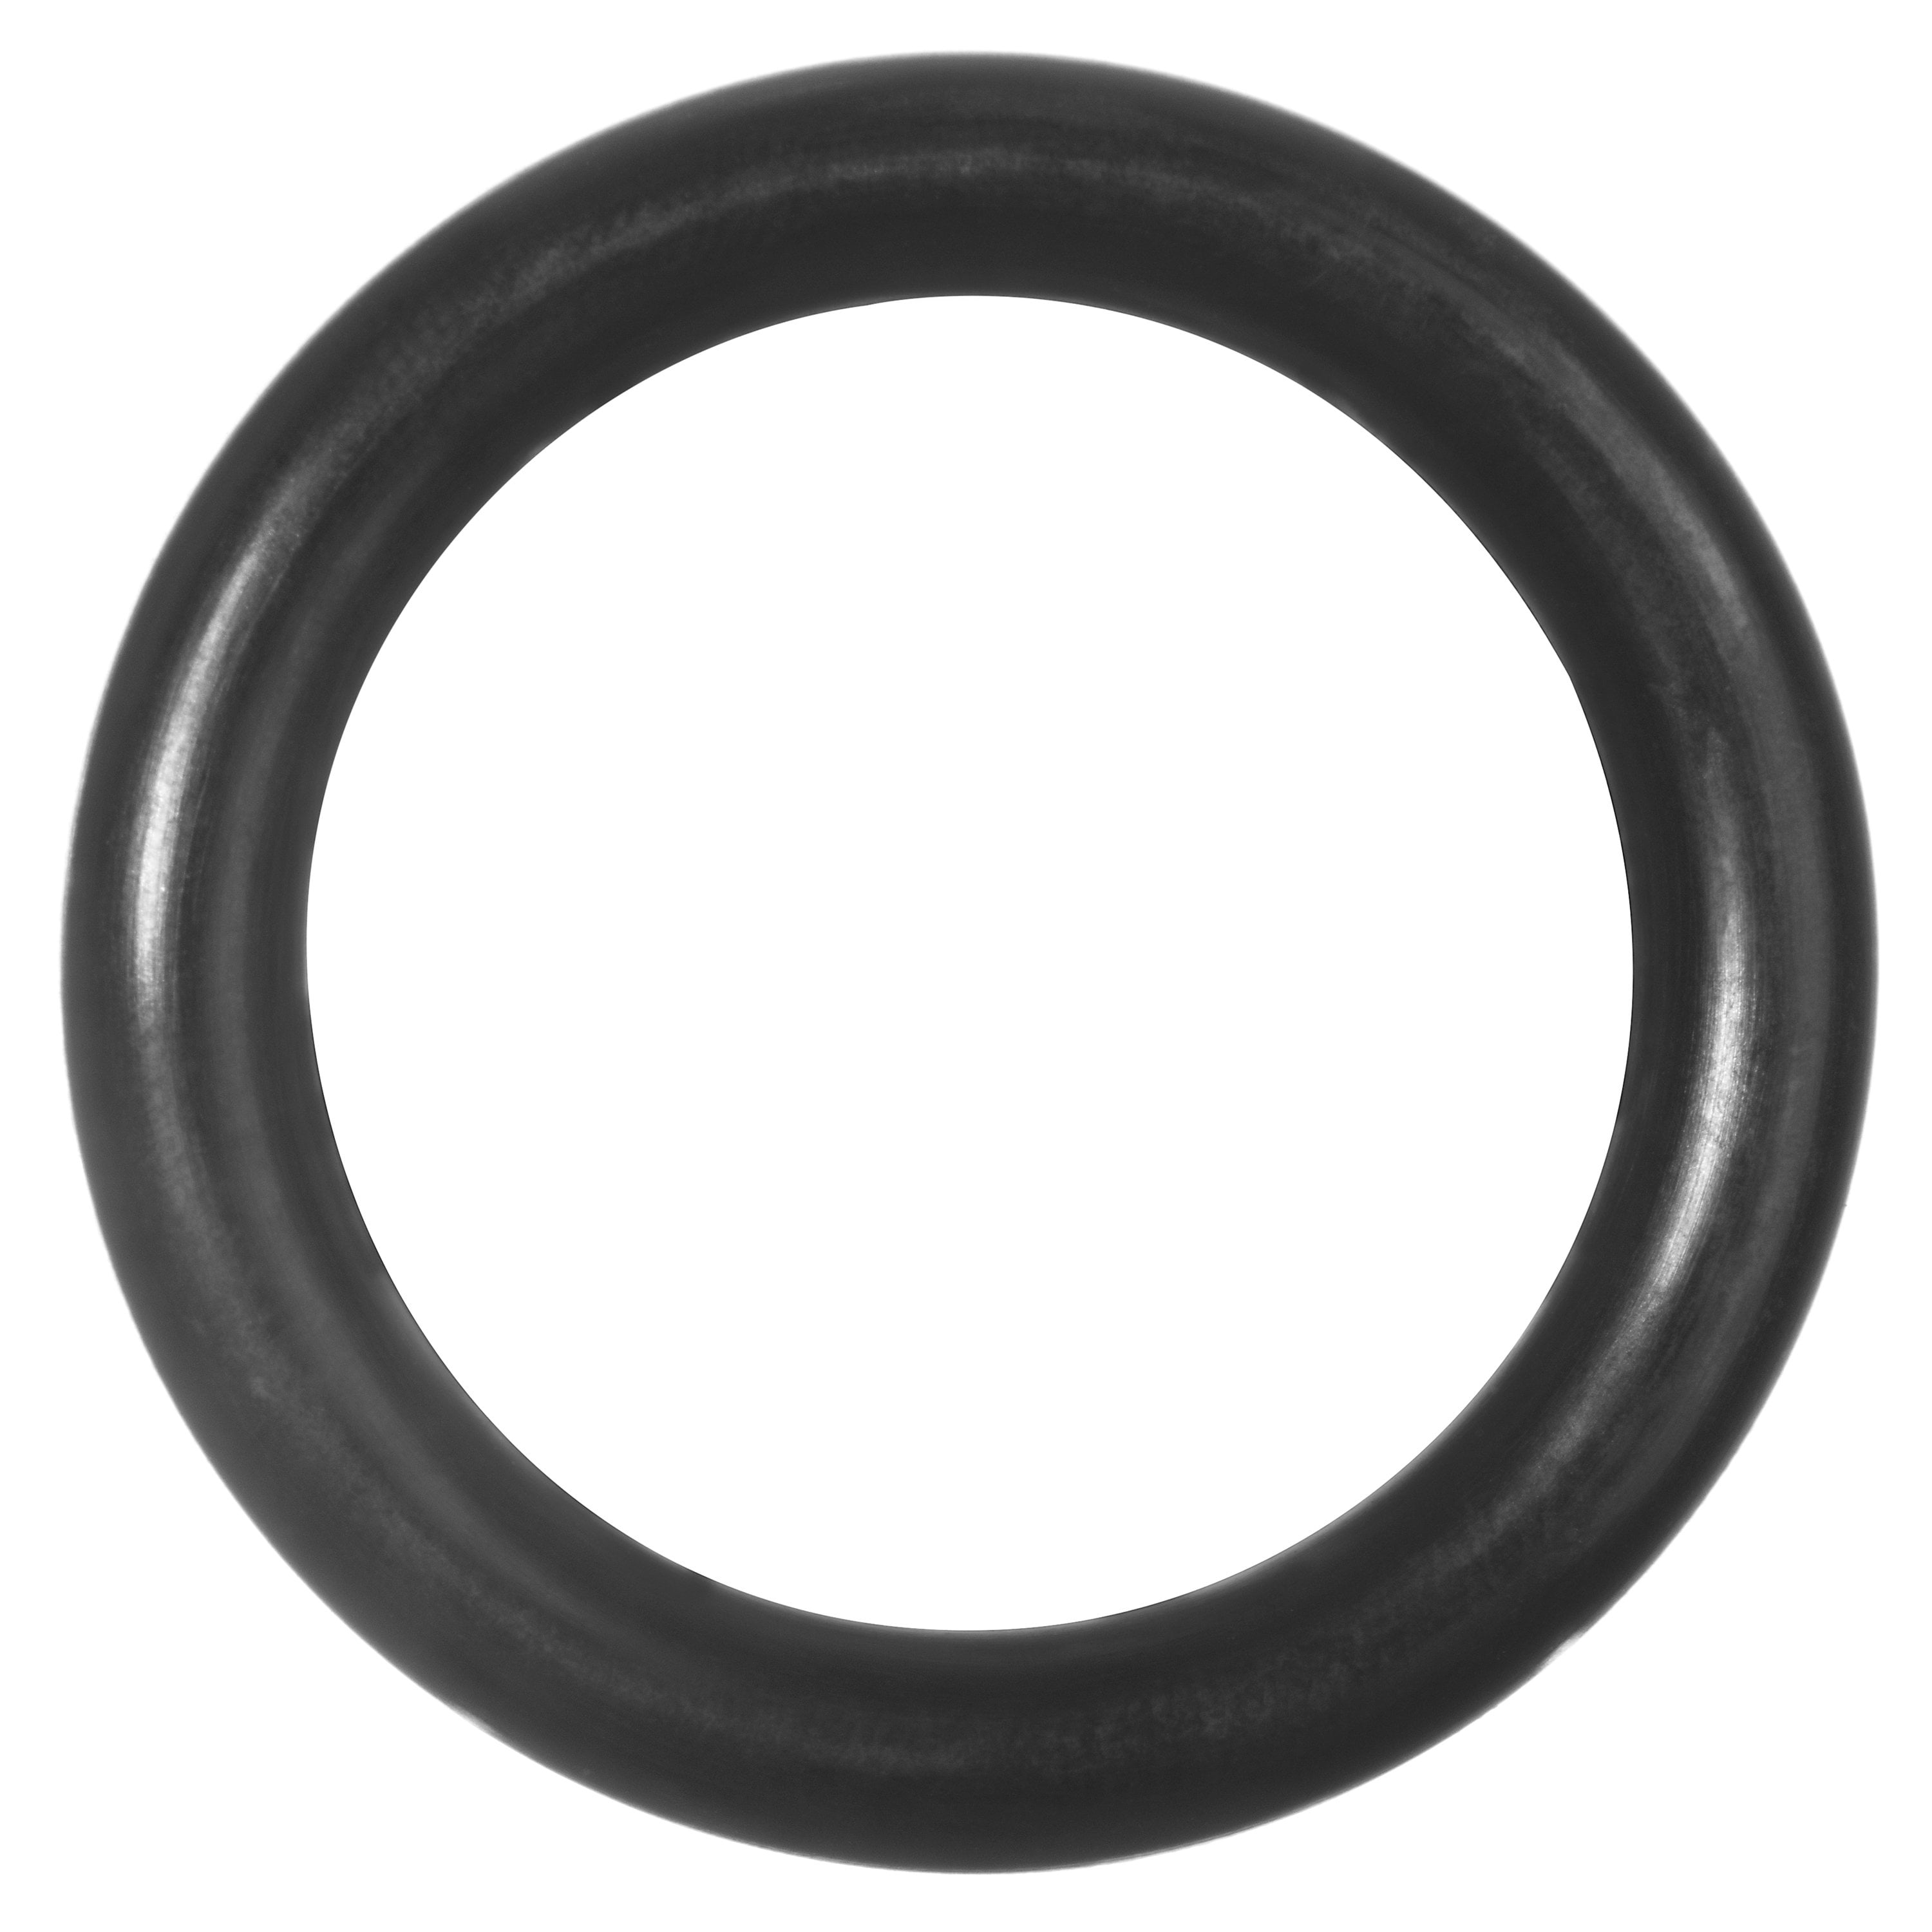 Oil-Resistant Buna N O-Rings 3 7/8'' Diameter 25 EA per Pack -241 